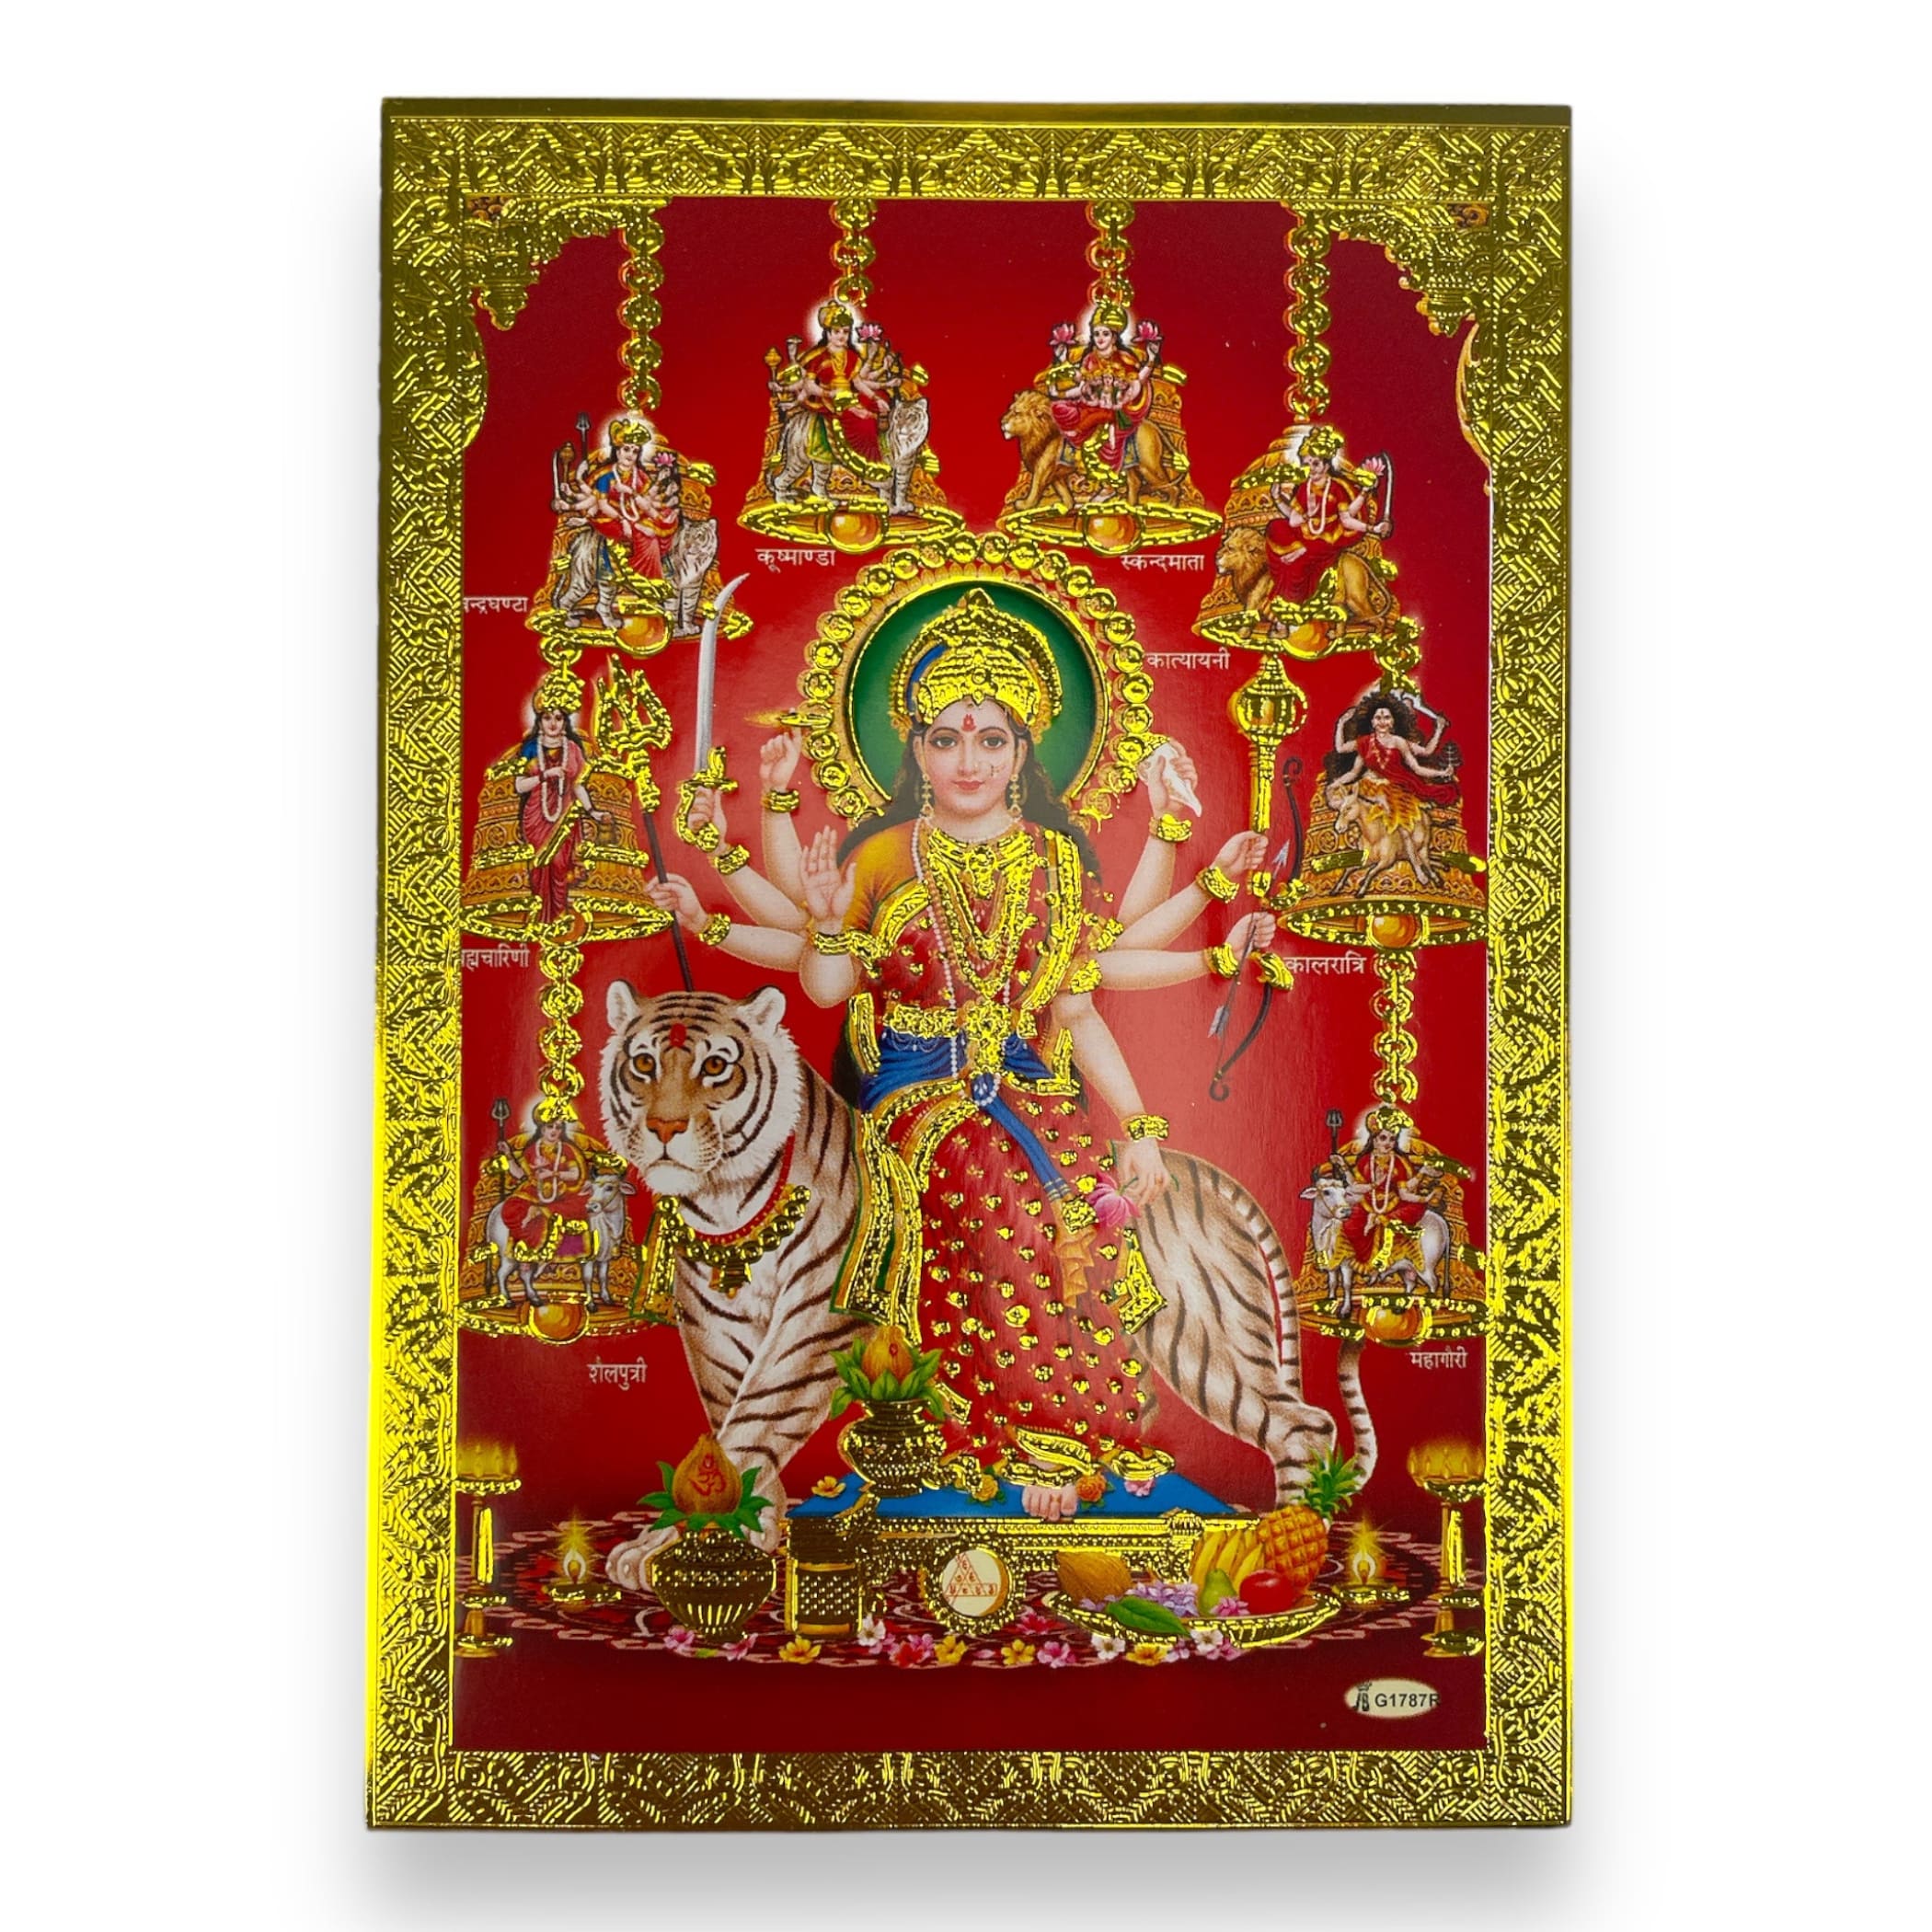 Durga puja kit ma pooja samagri diwali navratri item -